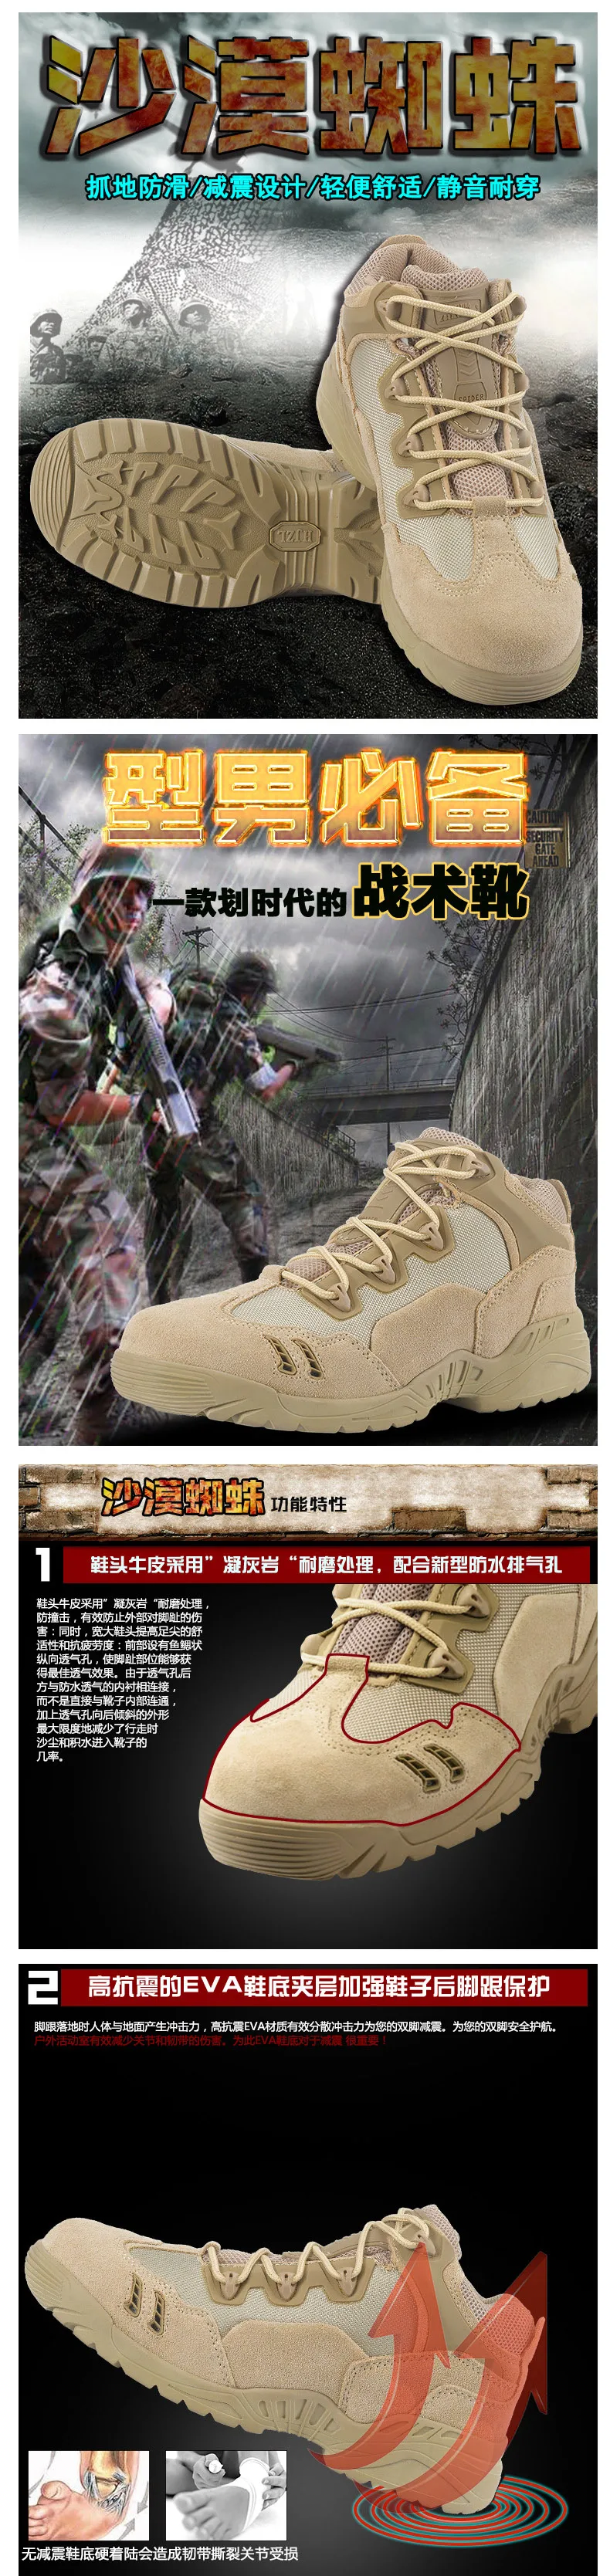 2018 новая армия Для мужчин спецназ Сверхлегкий армейские ботинки дезерты Армейские ботинки открытый Пеший Туризм обувь морской Для мужчин